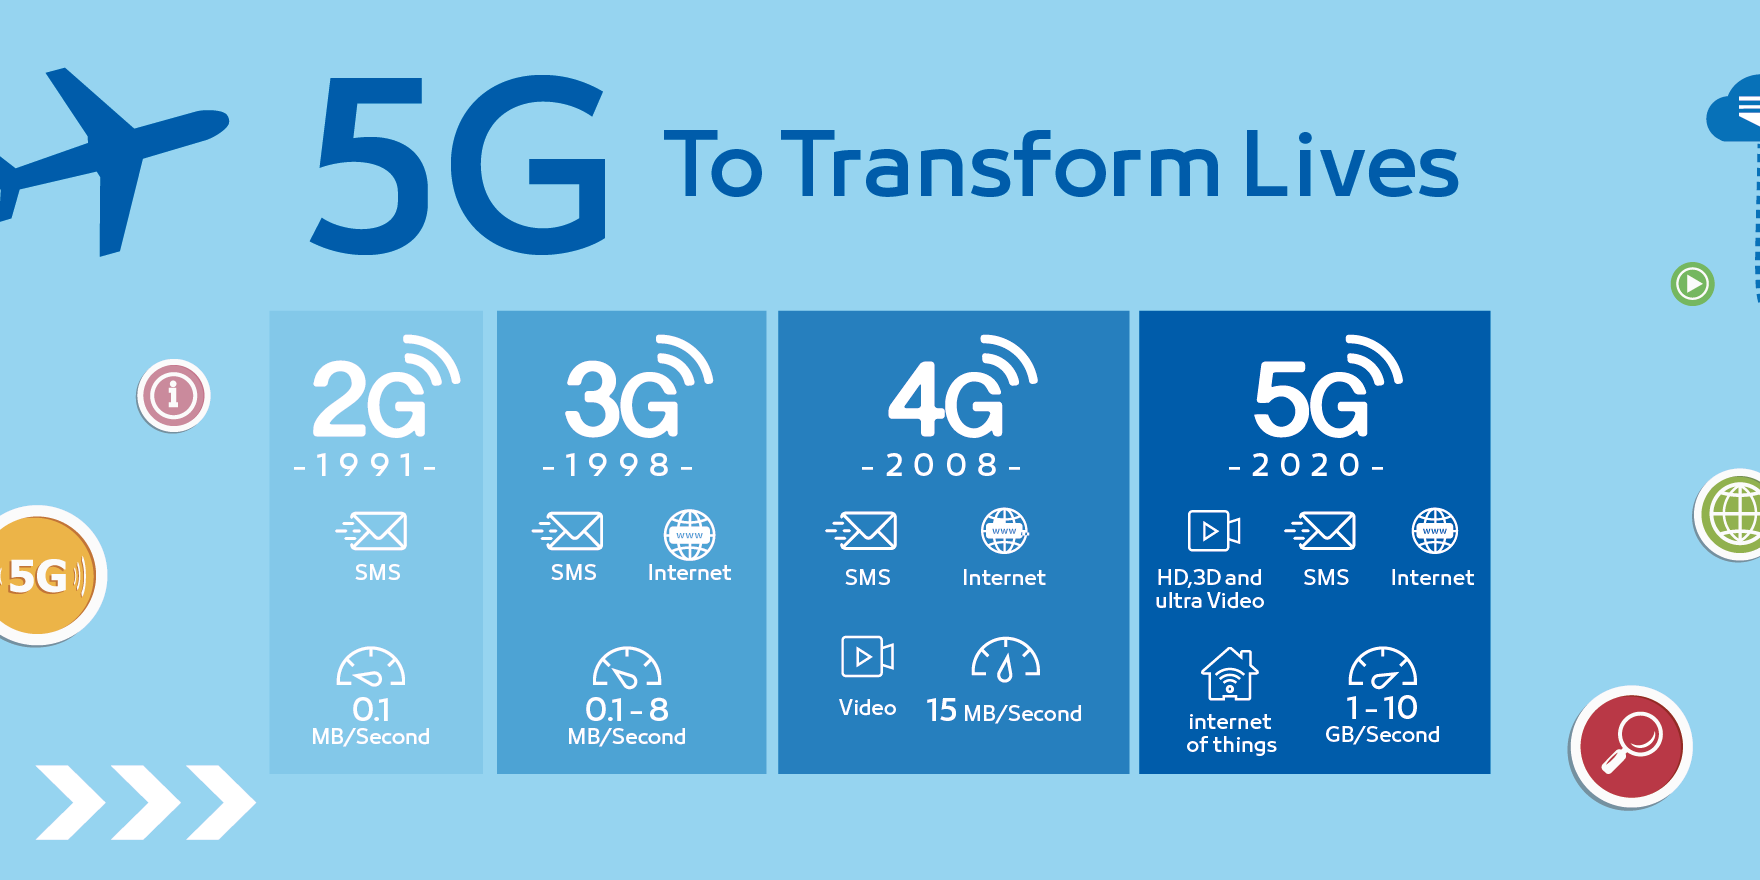 4g информация. Технологии сотовой связи 2g 3g 4g. Поколения сотовой связи 2g 3g и 4g. Что такое 2g 3g 4g в сотовой связи. Скорости мобильного интернета 2g 3g 4g.